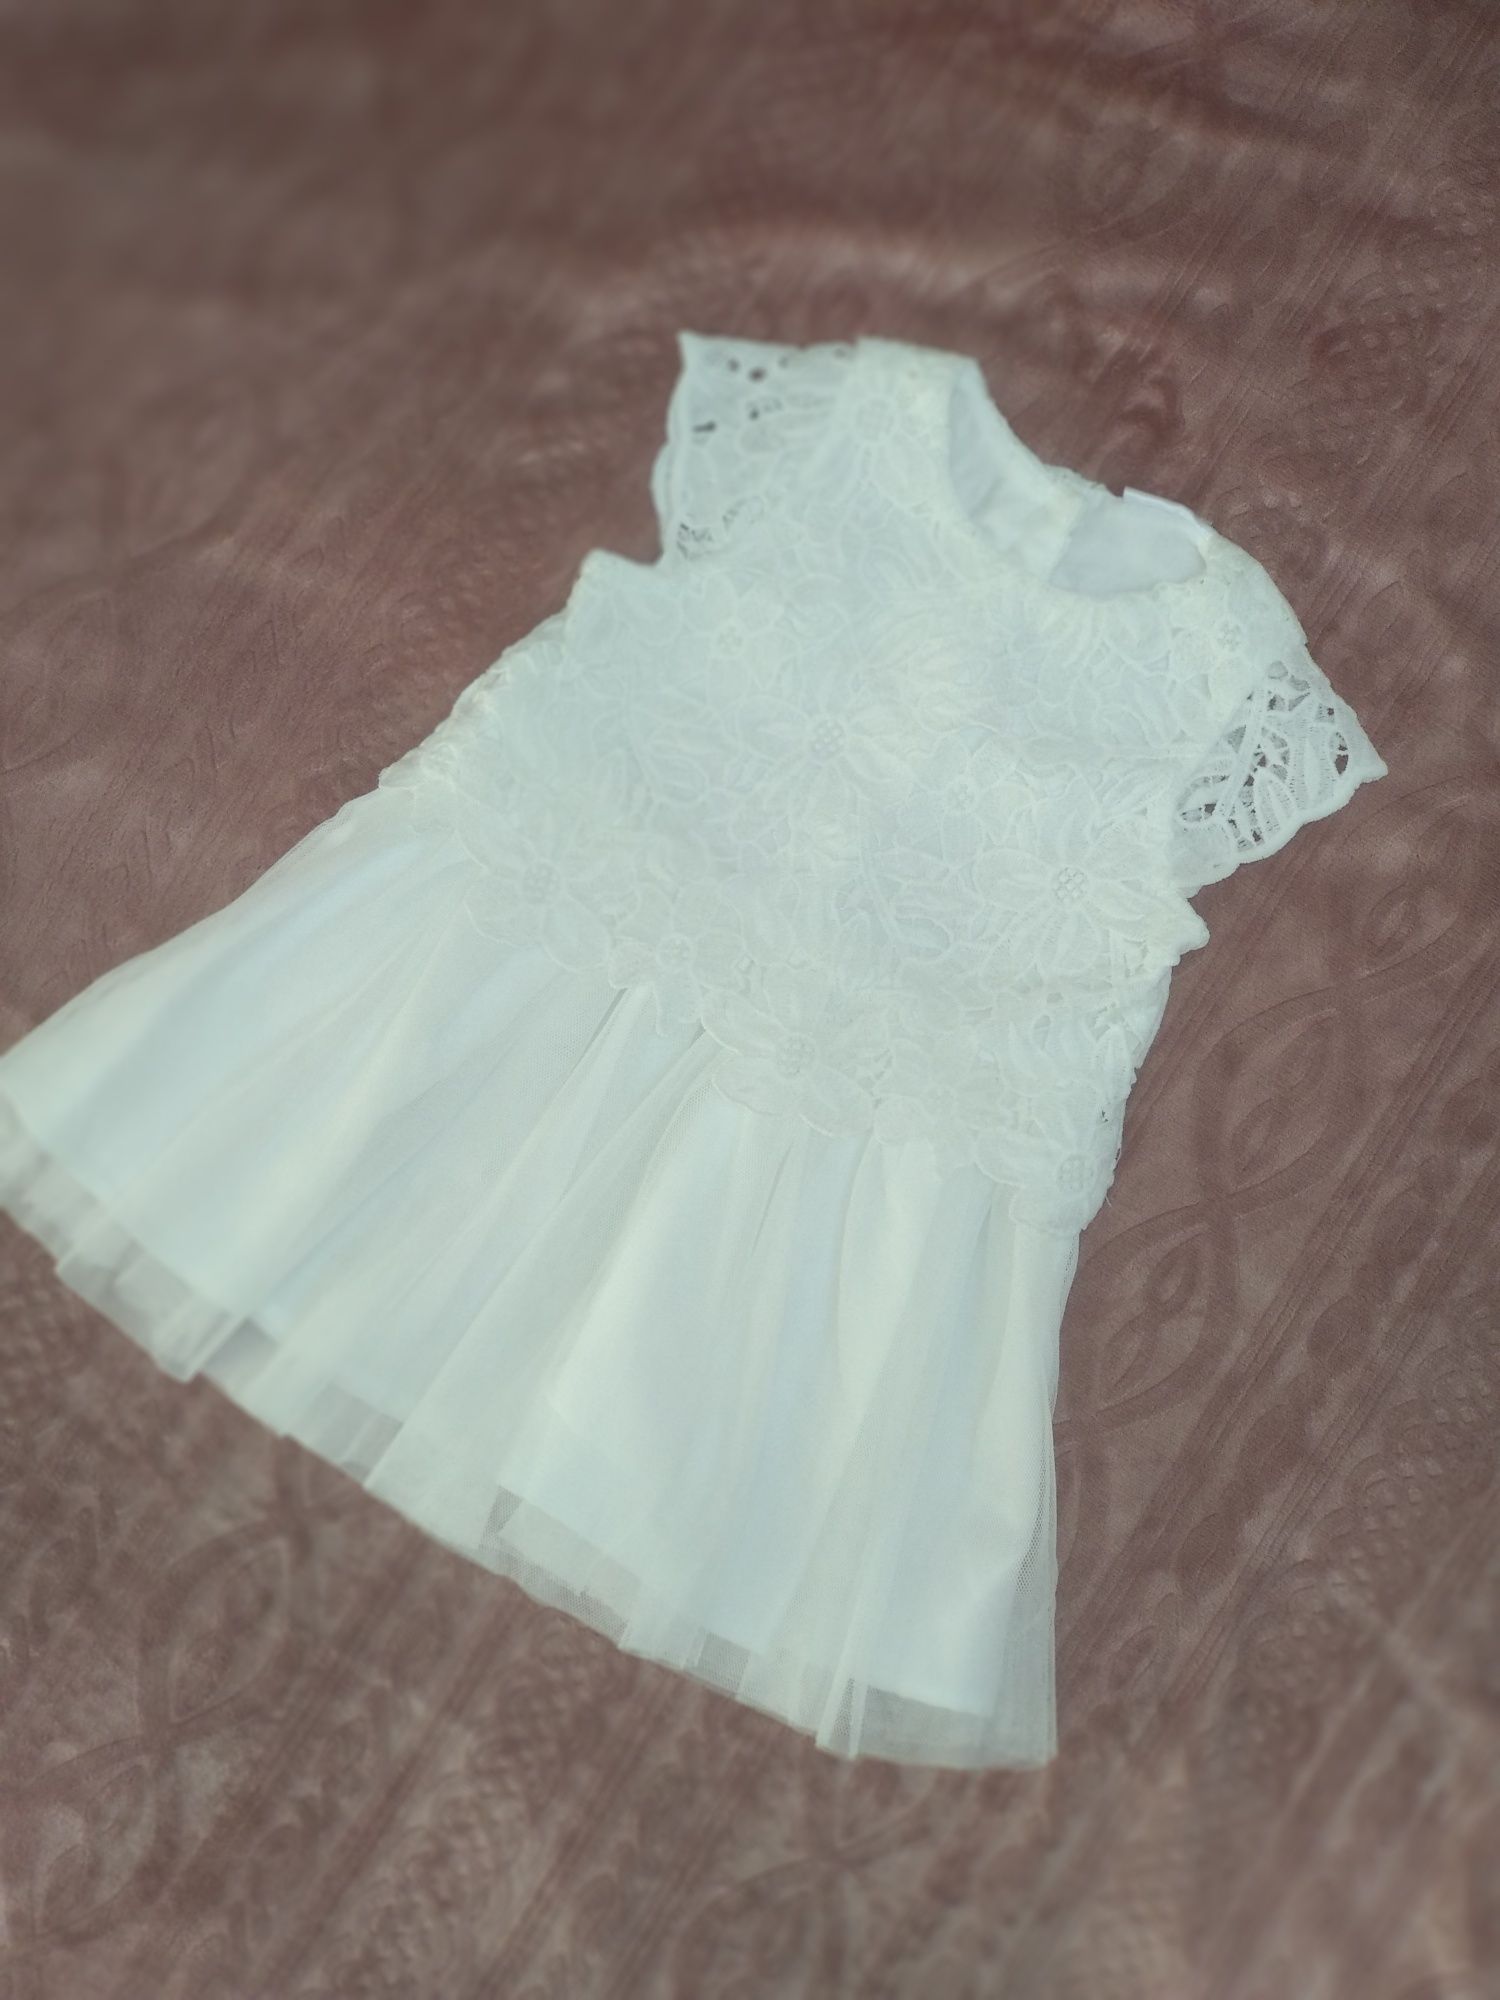 NOWA! Piękna biała sukienka tiul i gipiura rozmiar 74